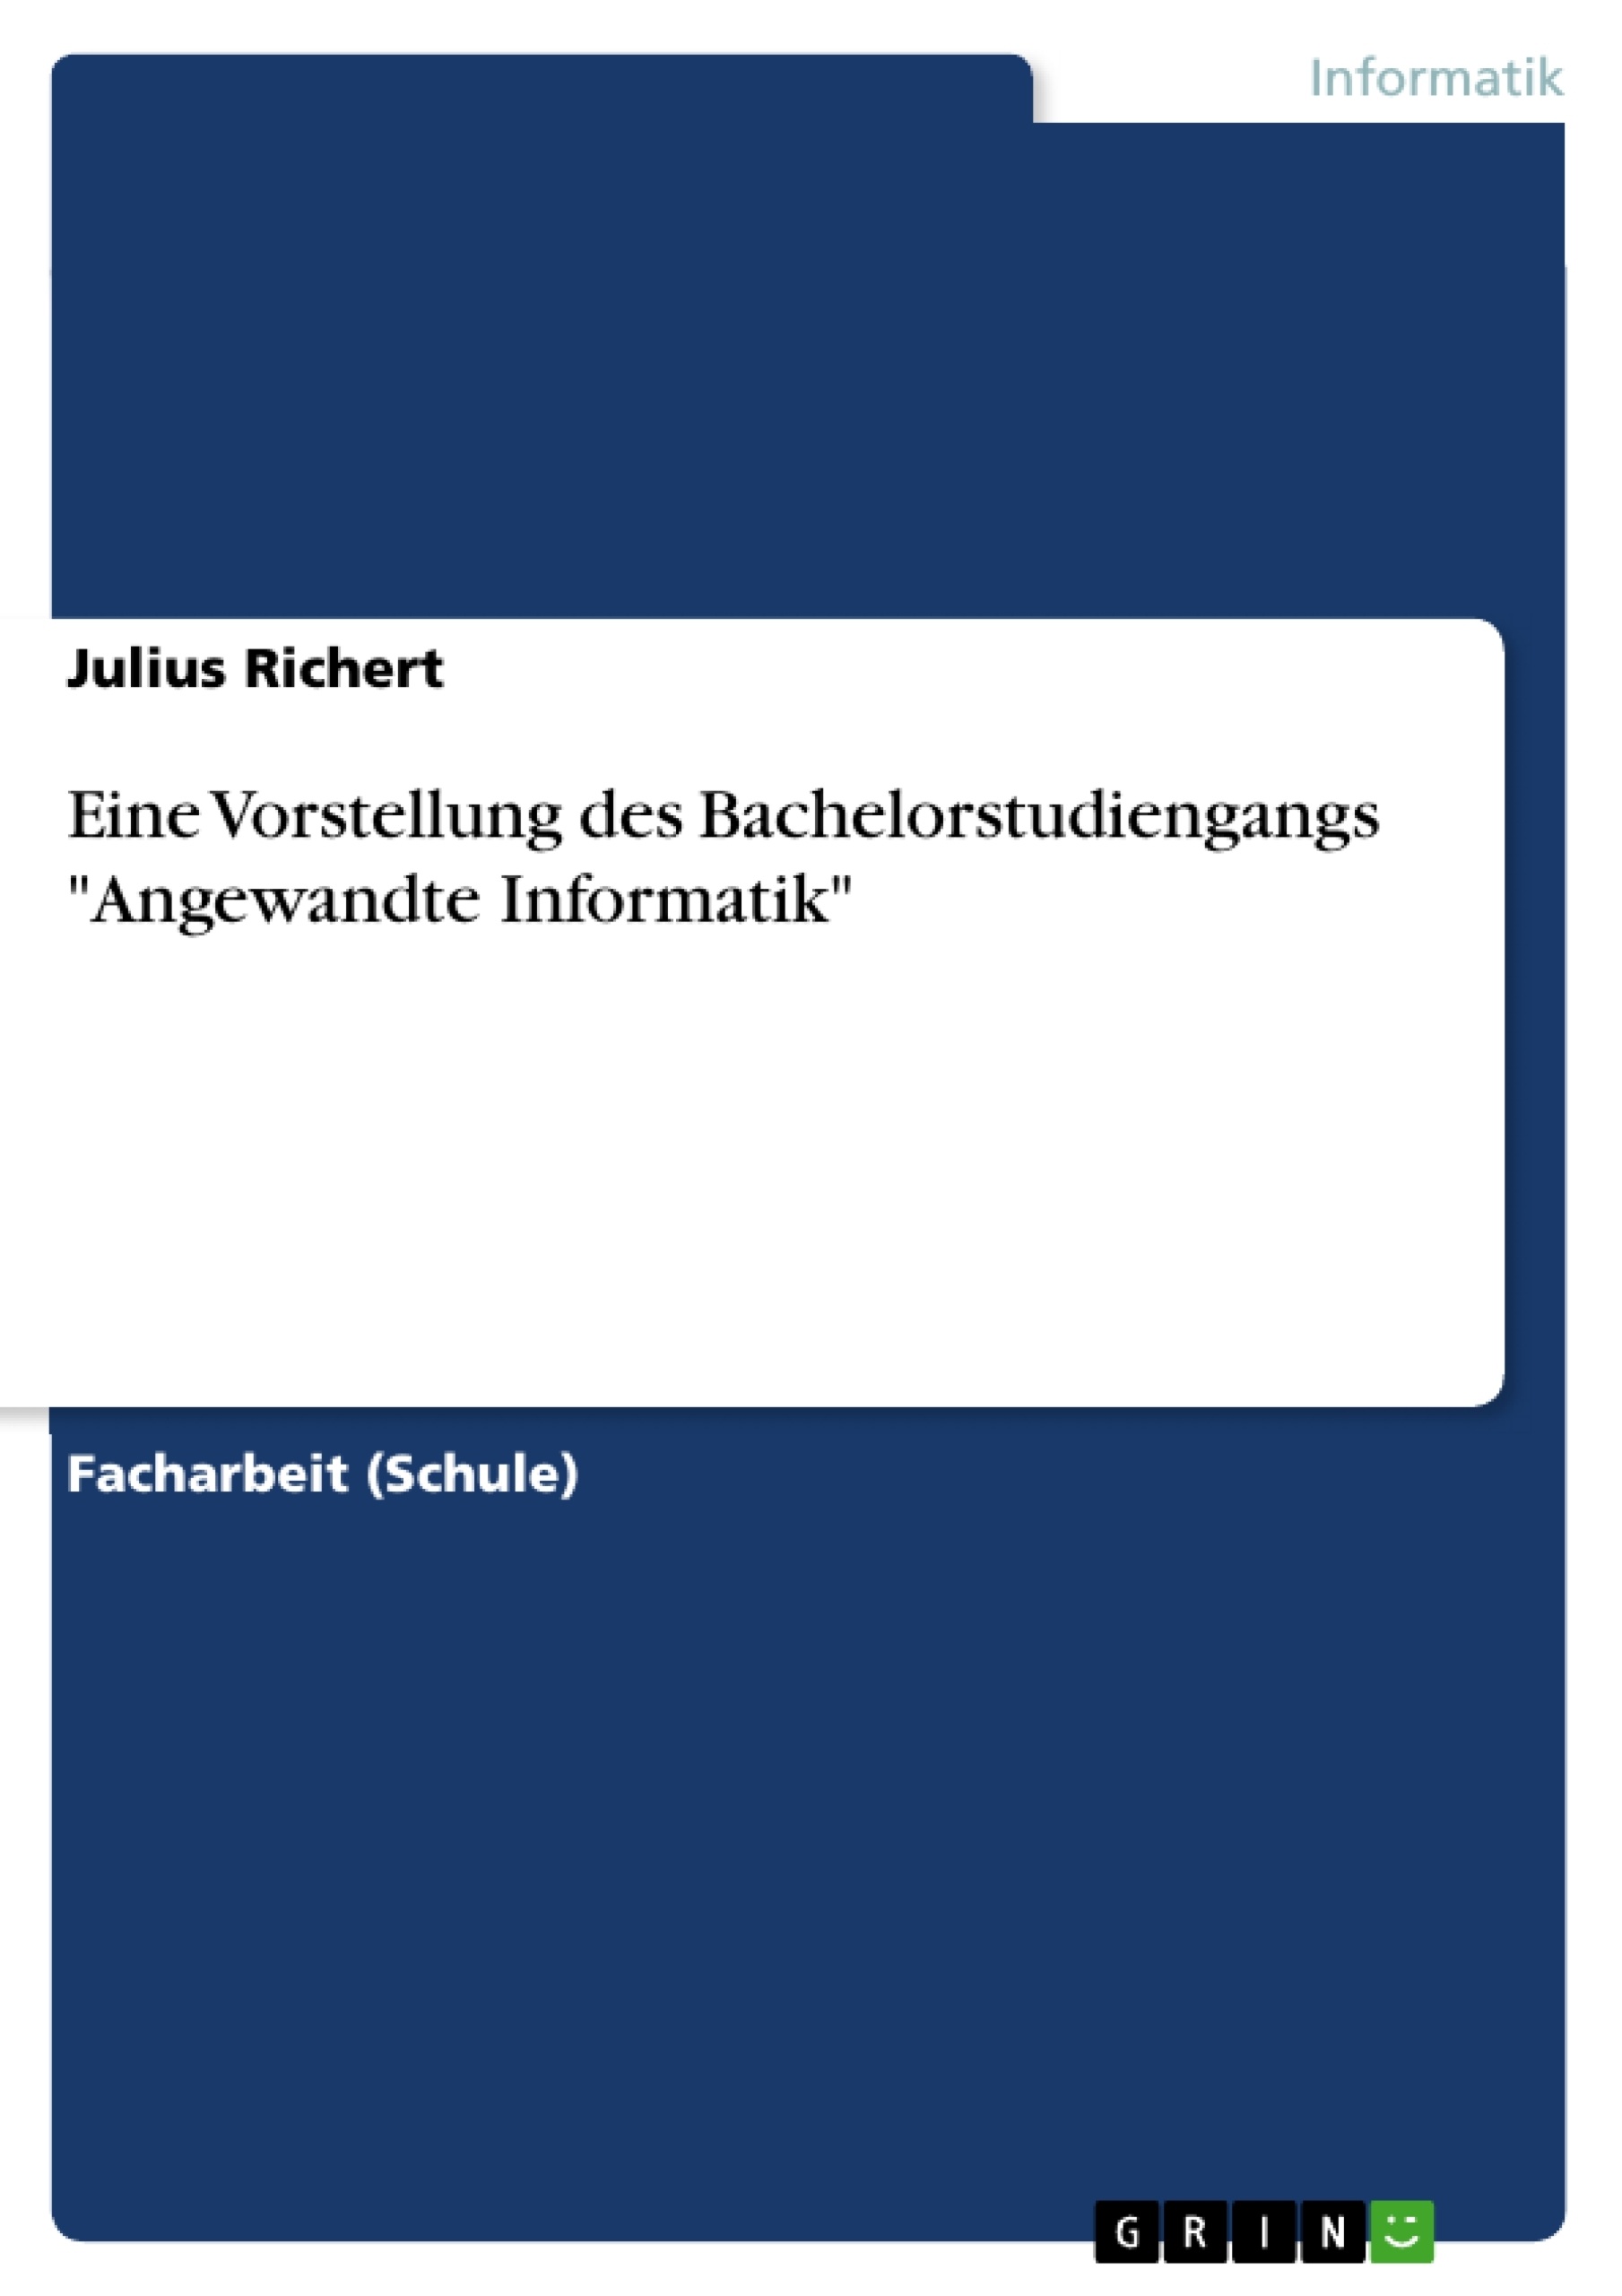 Titre: Eine Vorstellung des Bachelorstudiengangs "Angewandte Informatik"